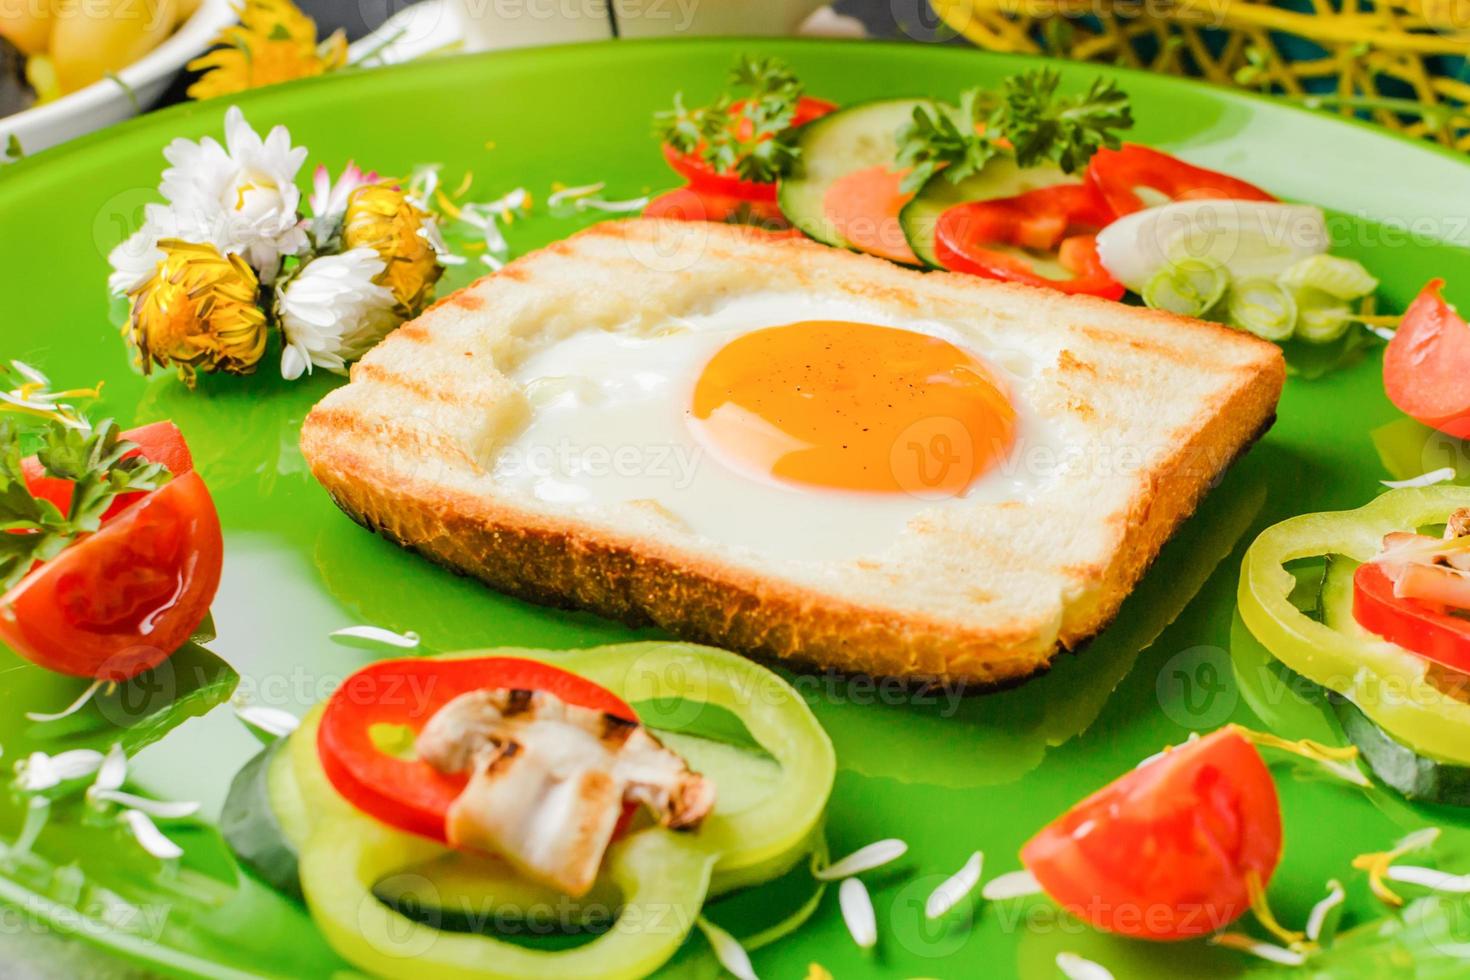 oeuf dans du pain grillé cuit en forme de fleur avec des légumes frais photo